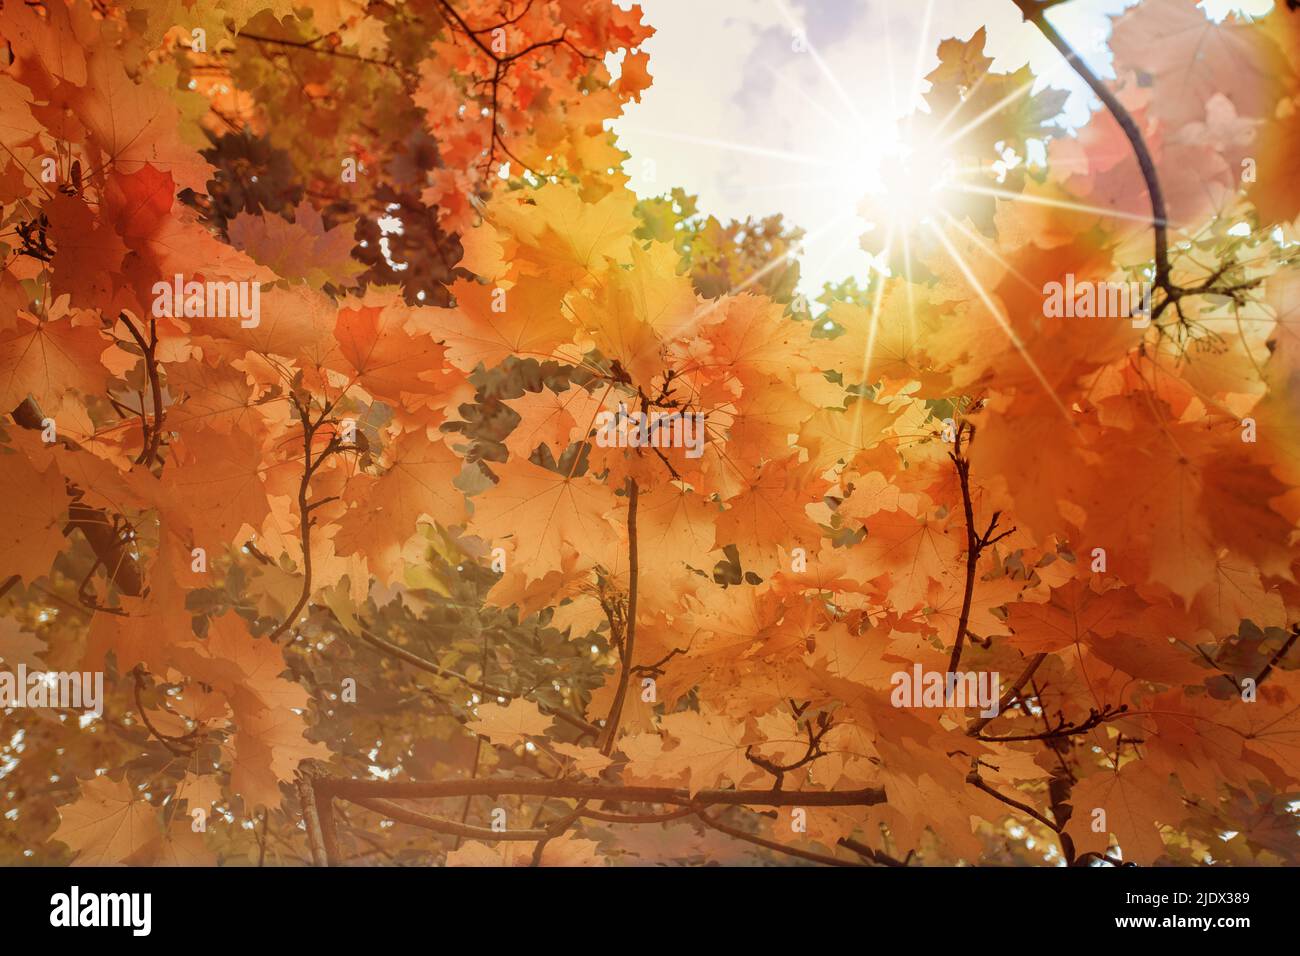 L'automne laisse le fond. Feuille d'érable jaune sur texture floue avec lumière du soleil, bokeh ensoleillé, espace de copie. Concept de la saison d'automne. Carte d'automne dorée Banque D'Images